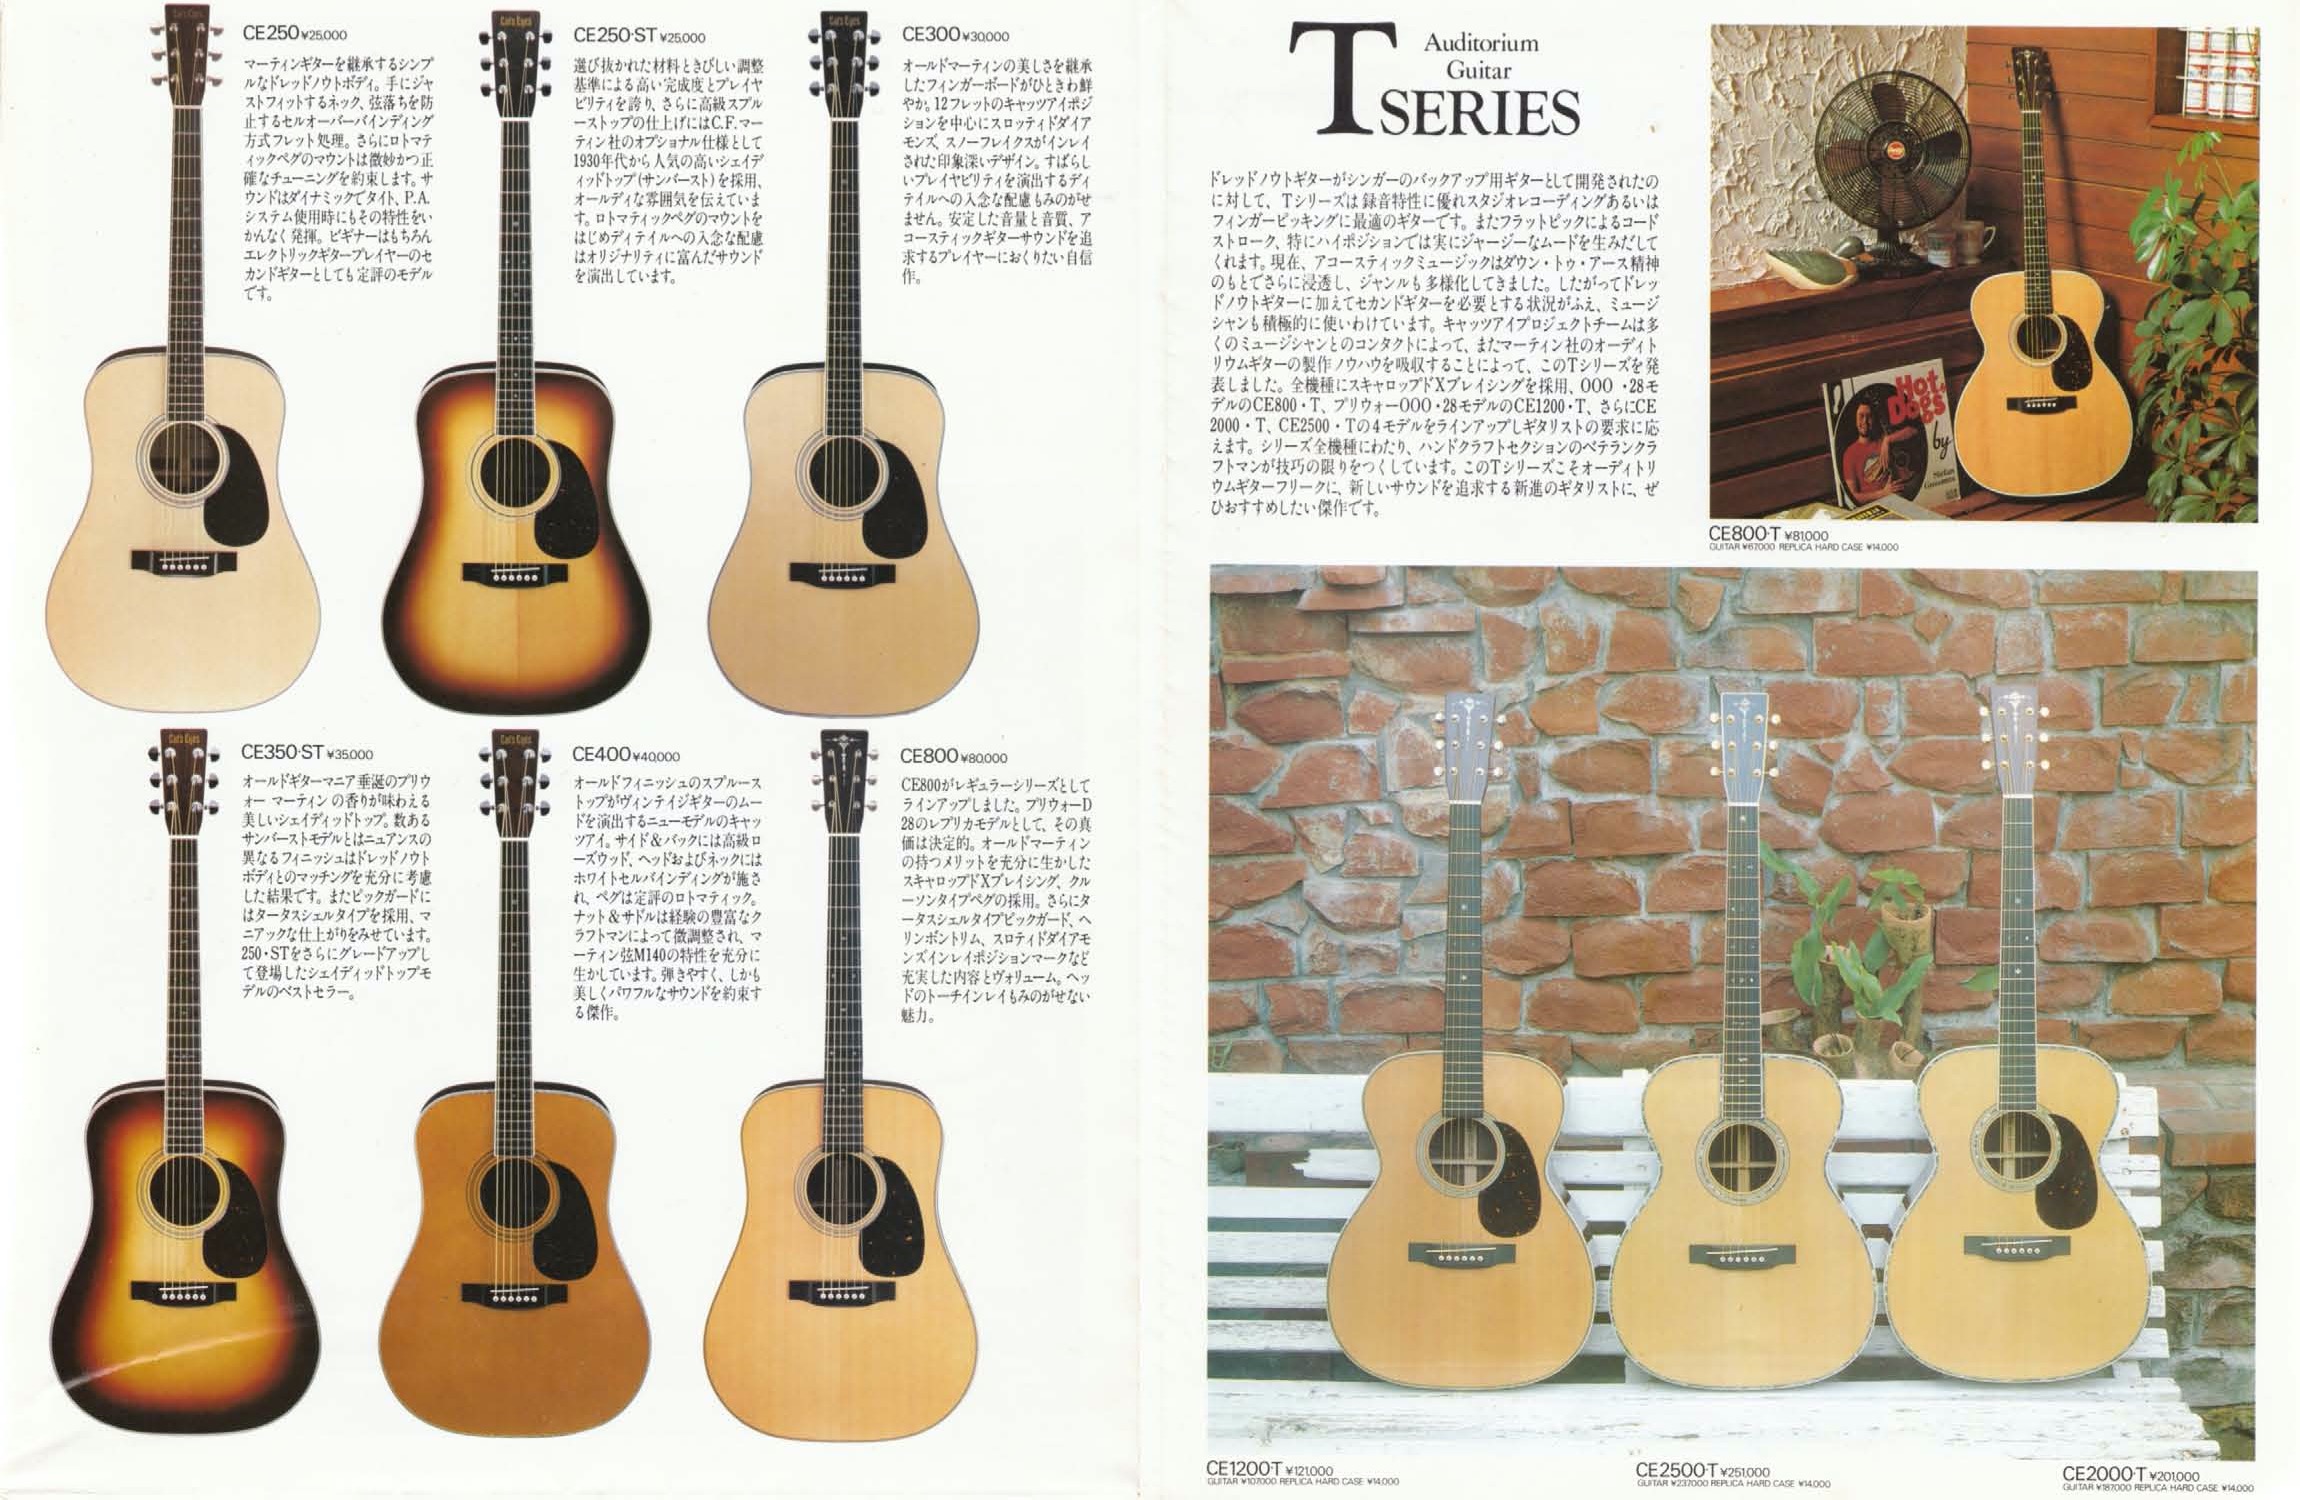 1981年 TOKAIアコースティックギター（Cat's Eyes & Martin）カタログ 